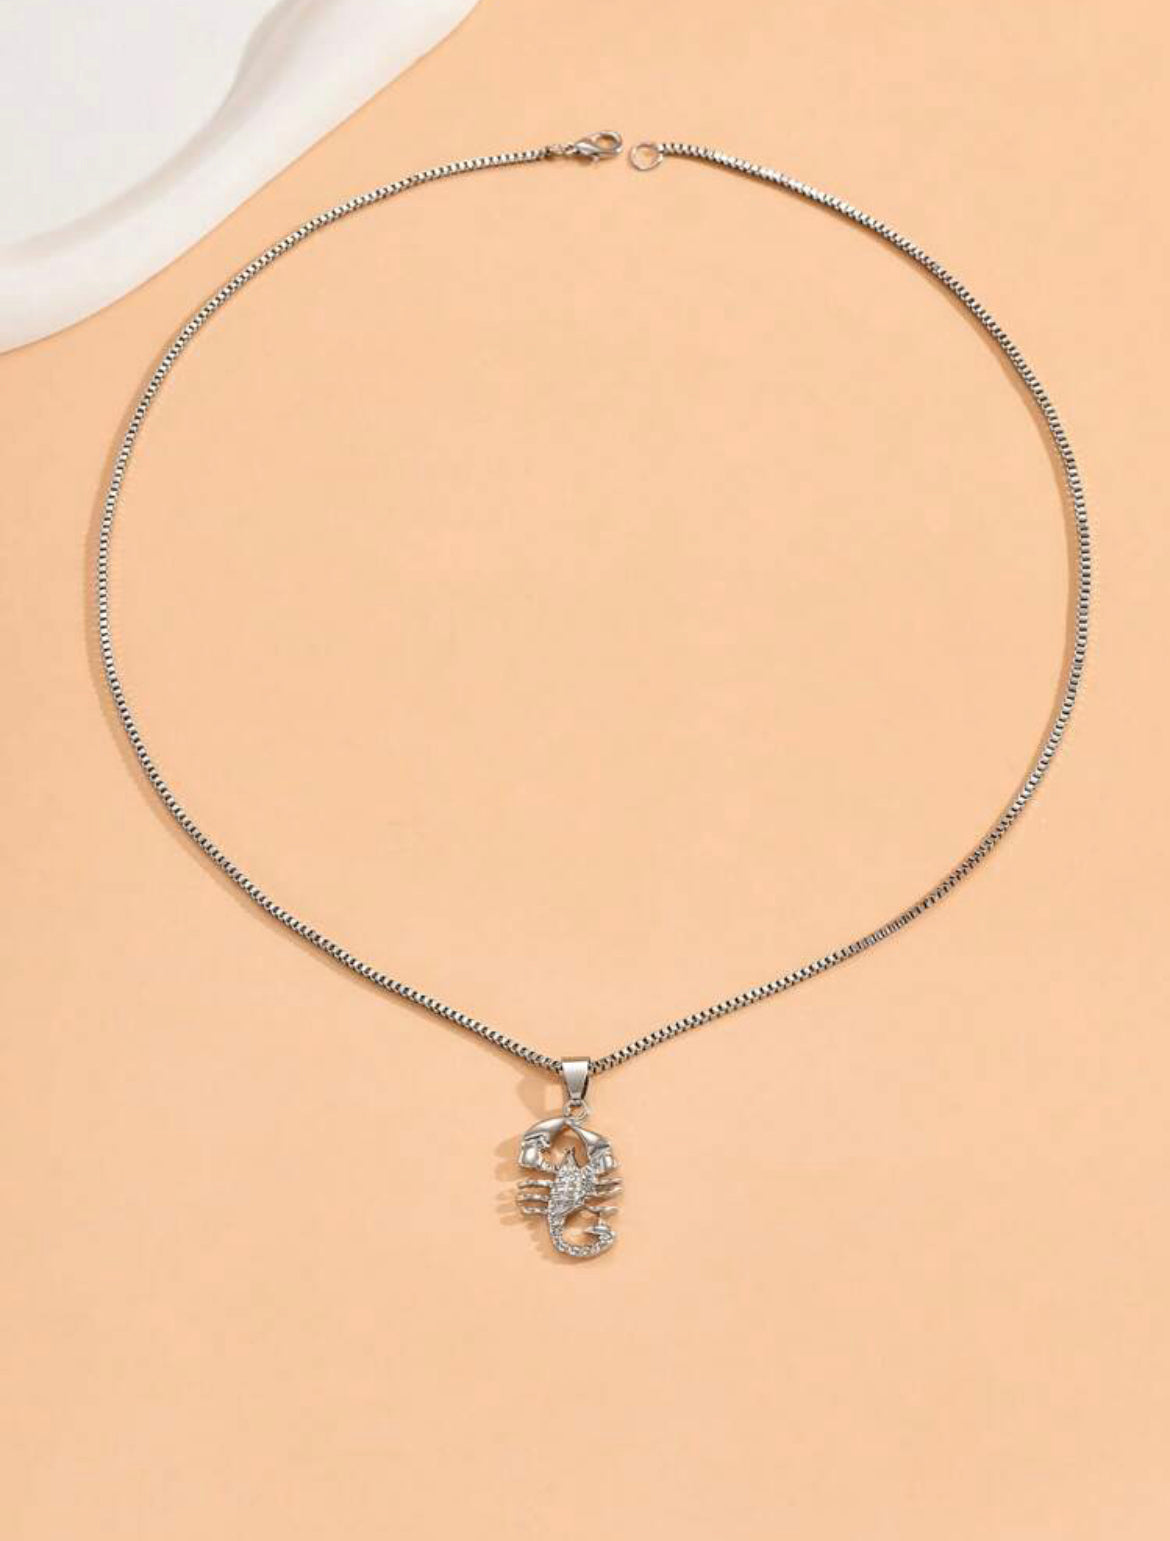 Scorpion Pendant Necklace for Men